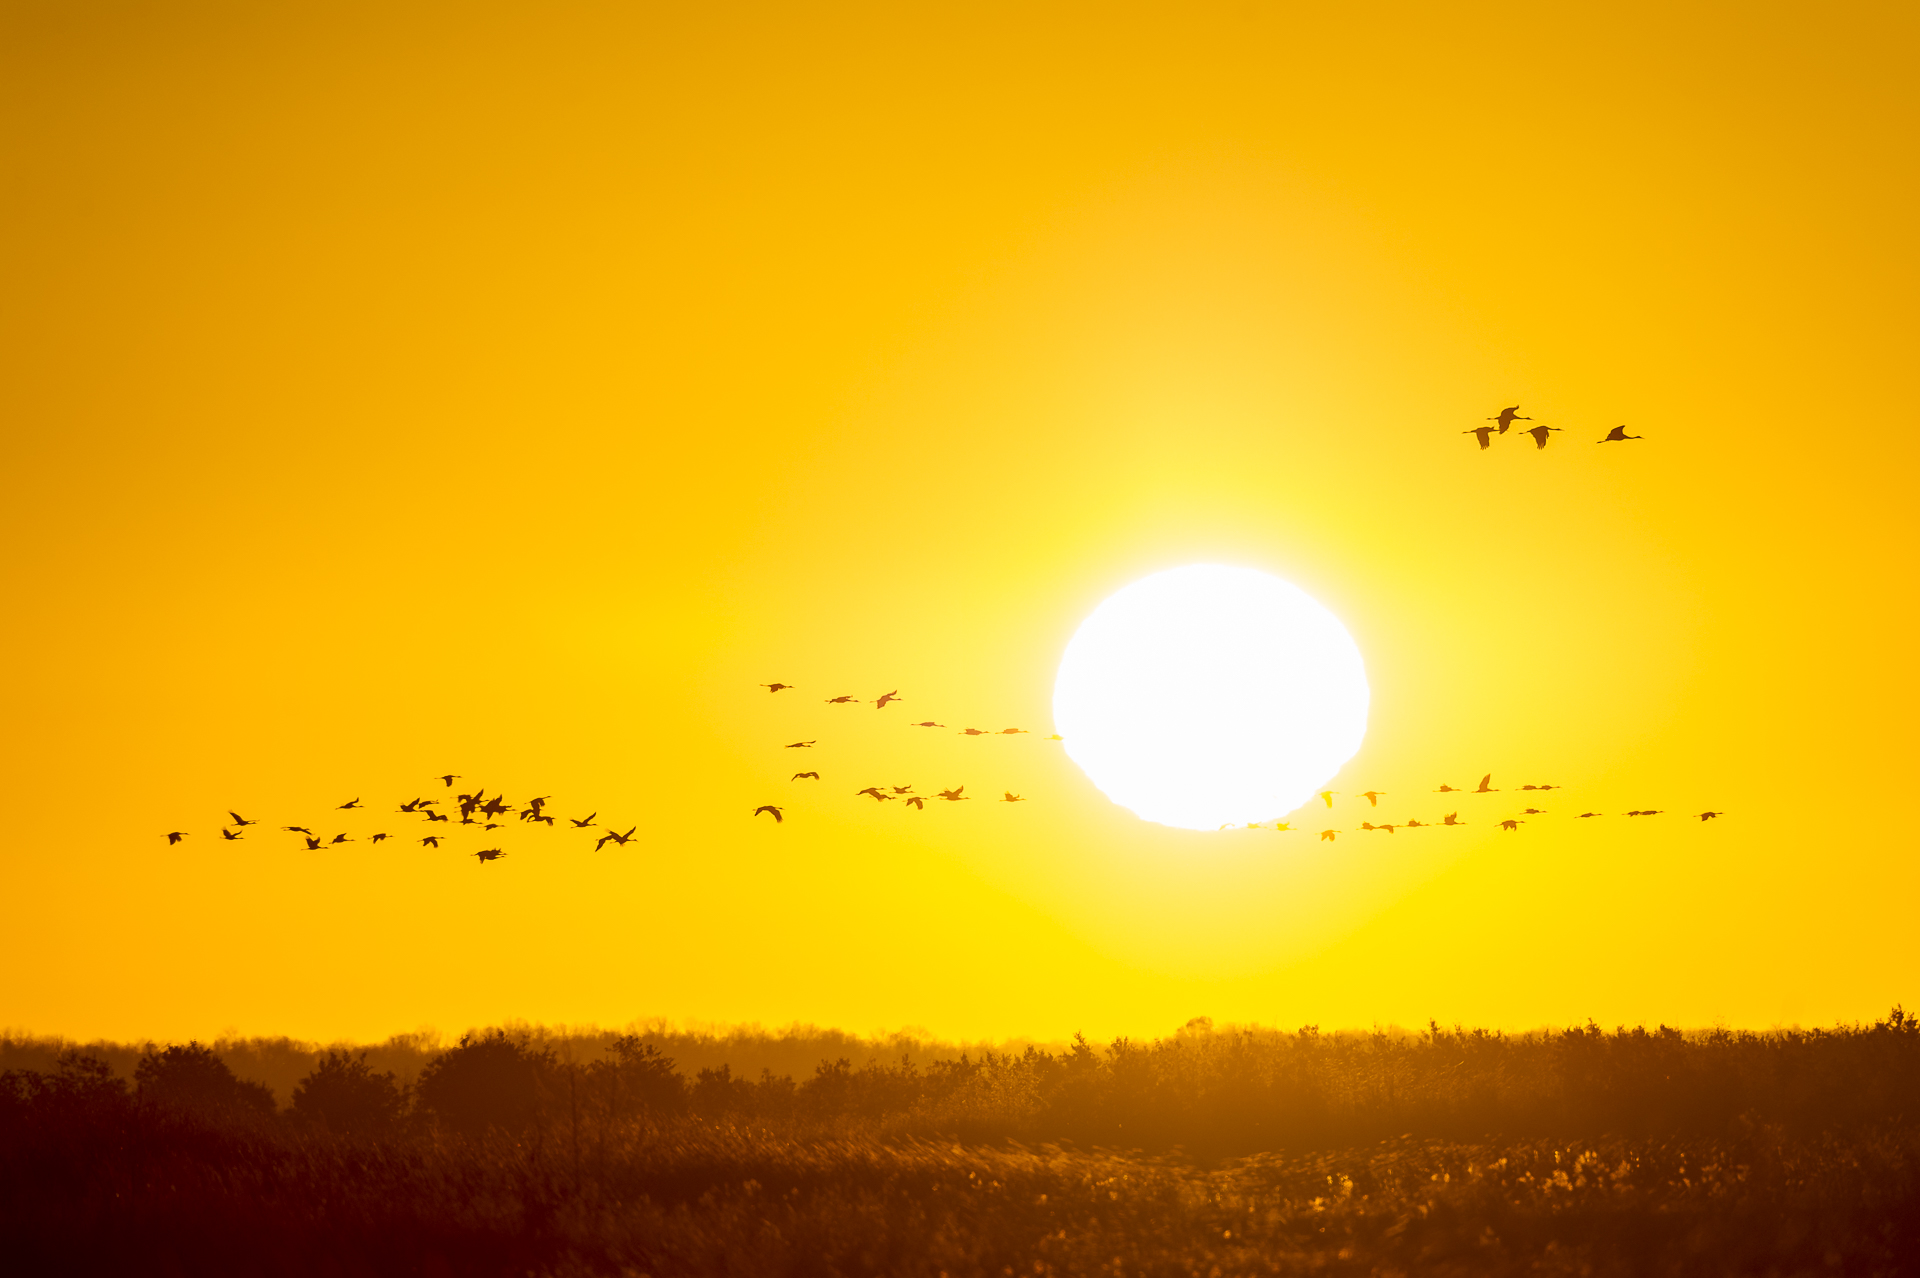 Sandhill cranes against the rising sun. Wisconsin.